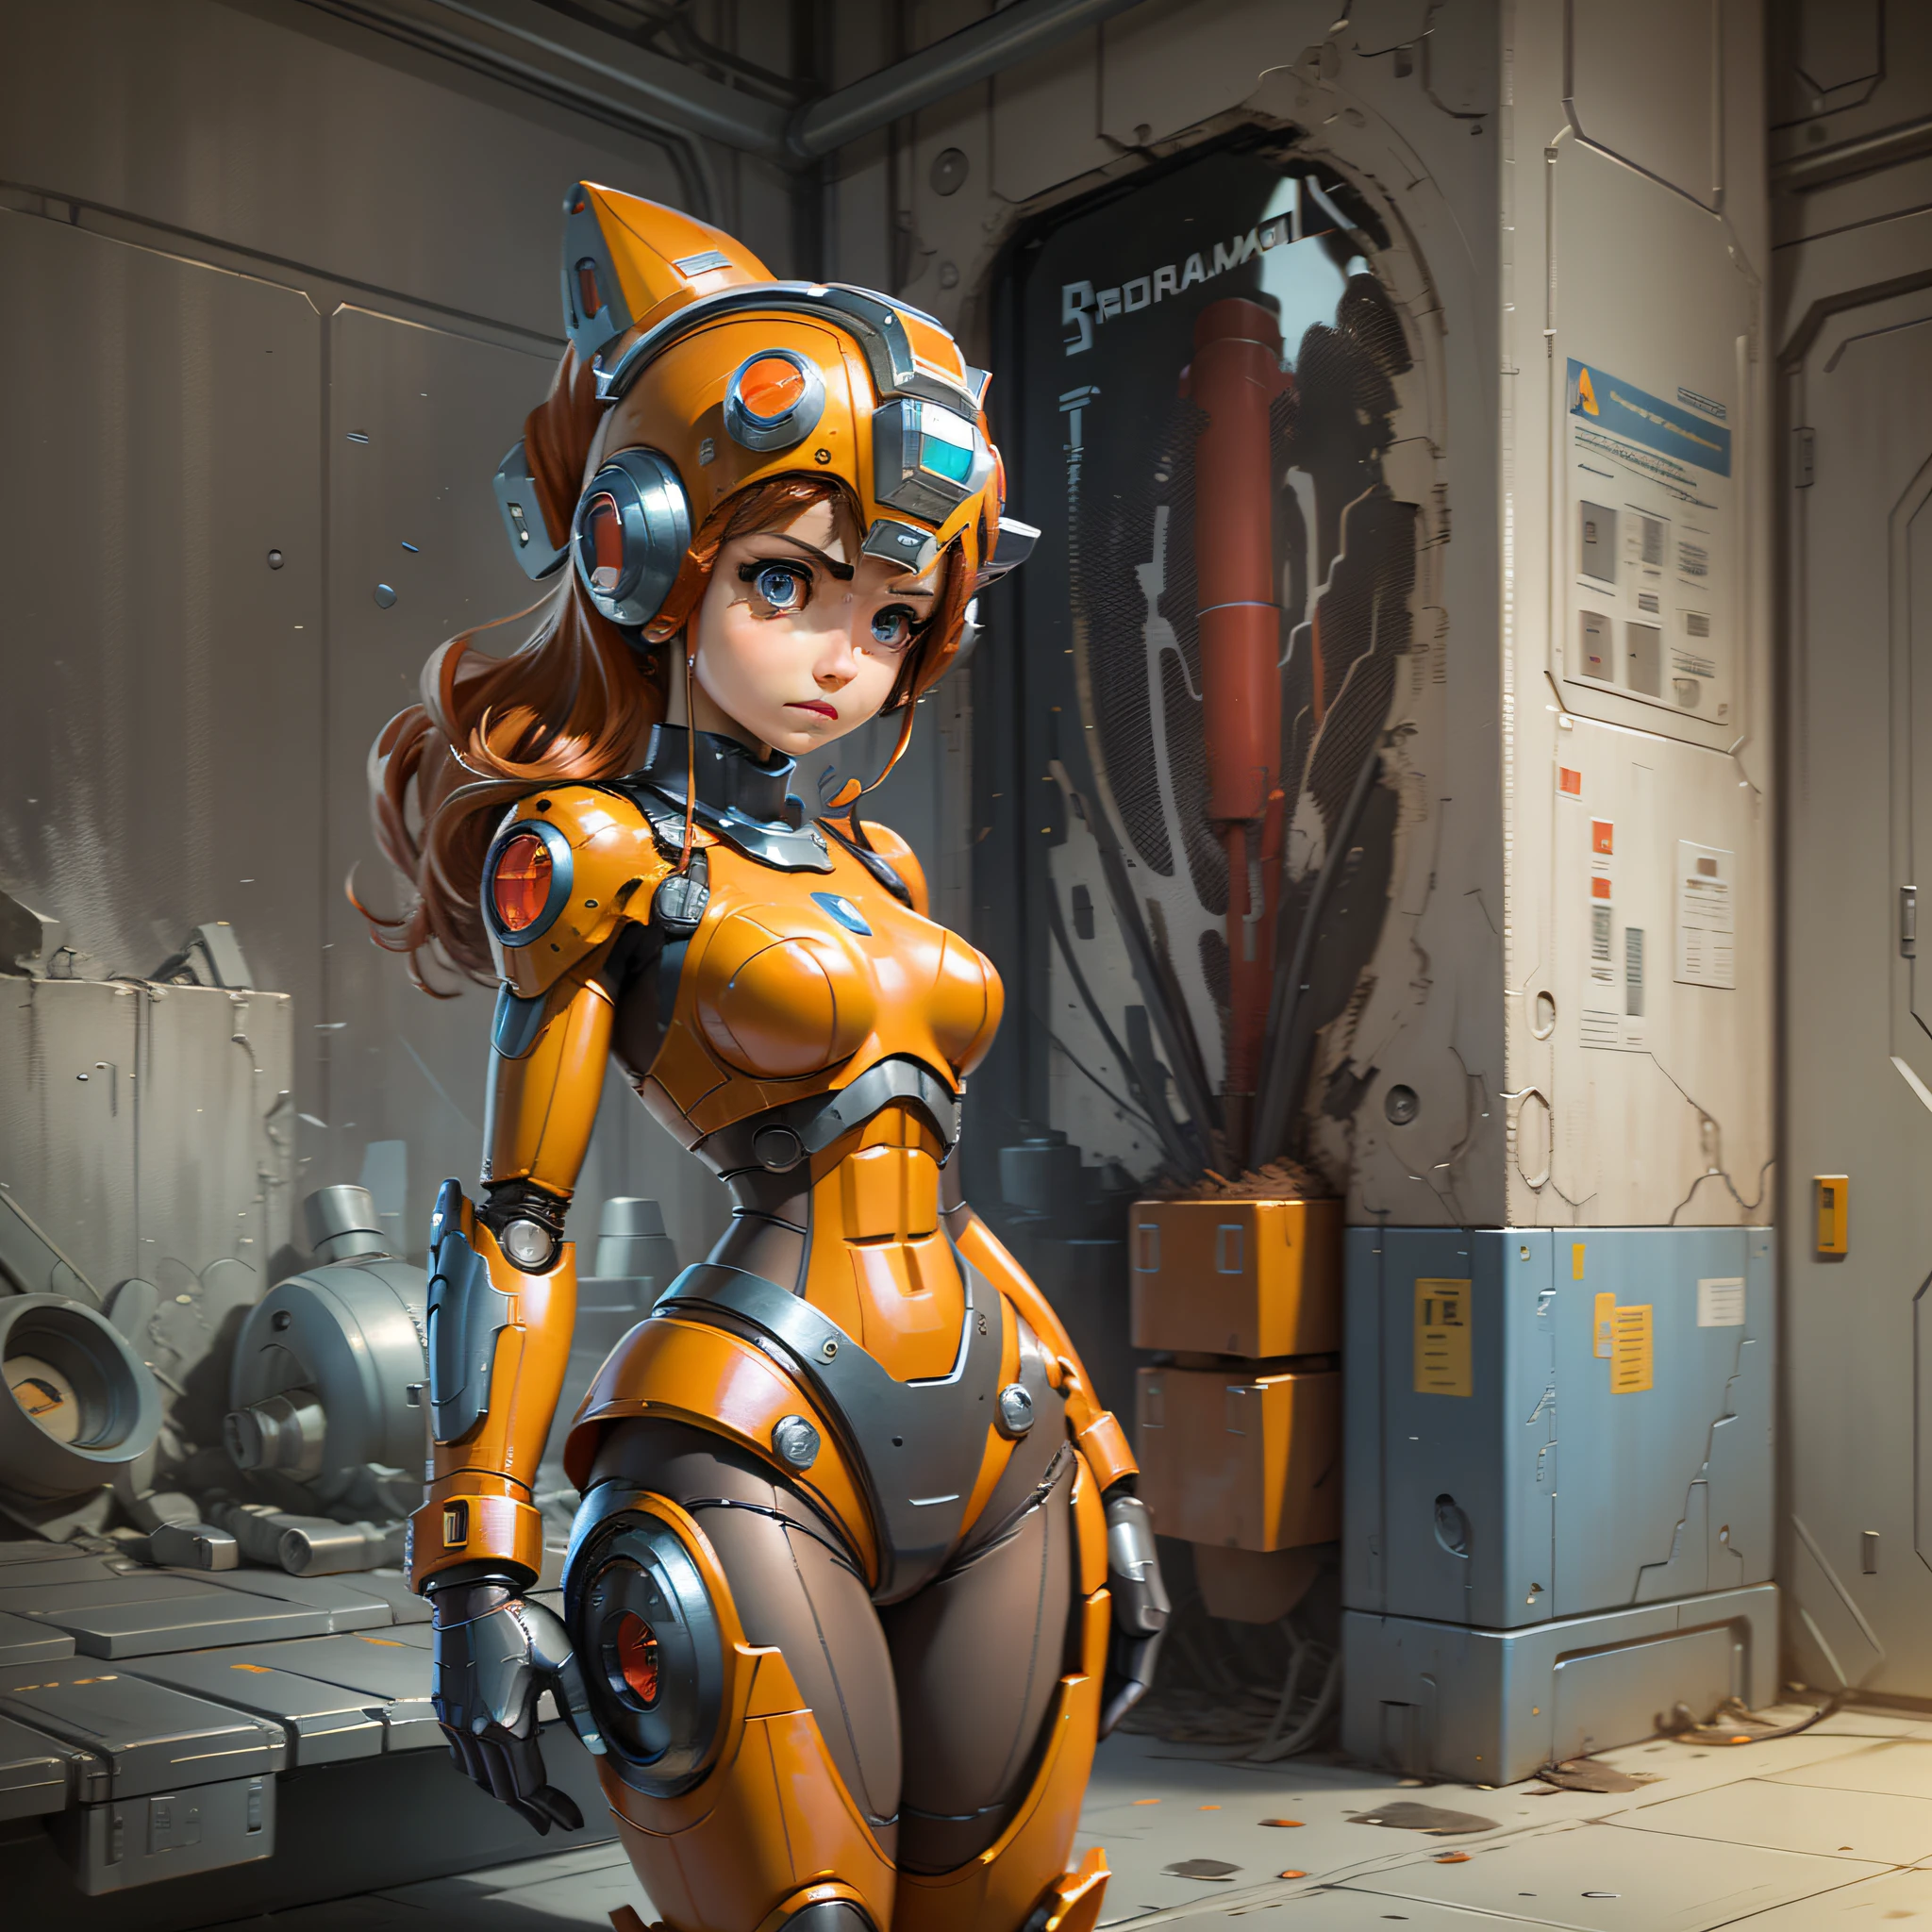 女士, 洛克人, 機器人, 控制论. 機械奇蹟, 橘色, 機械工程背景